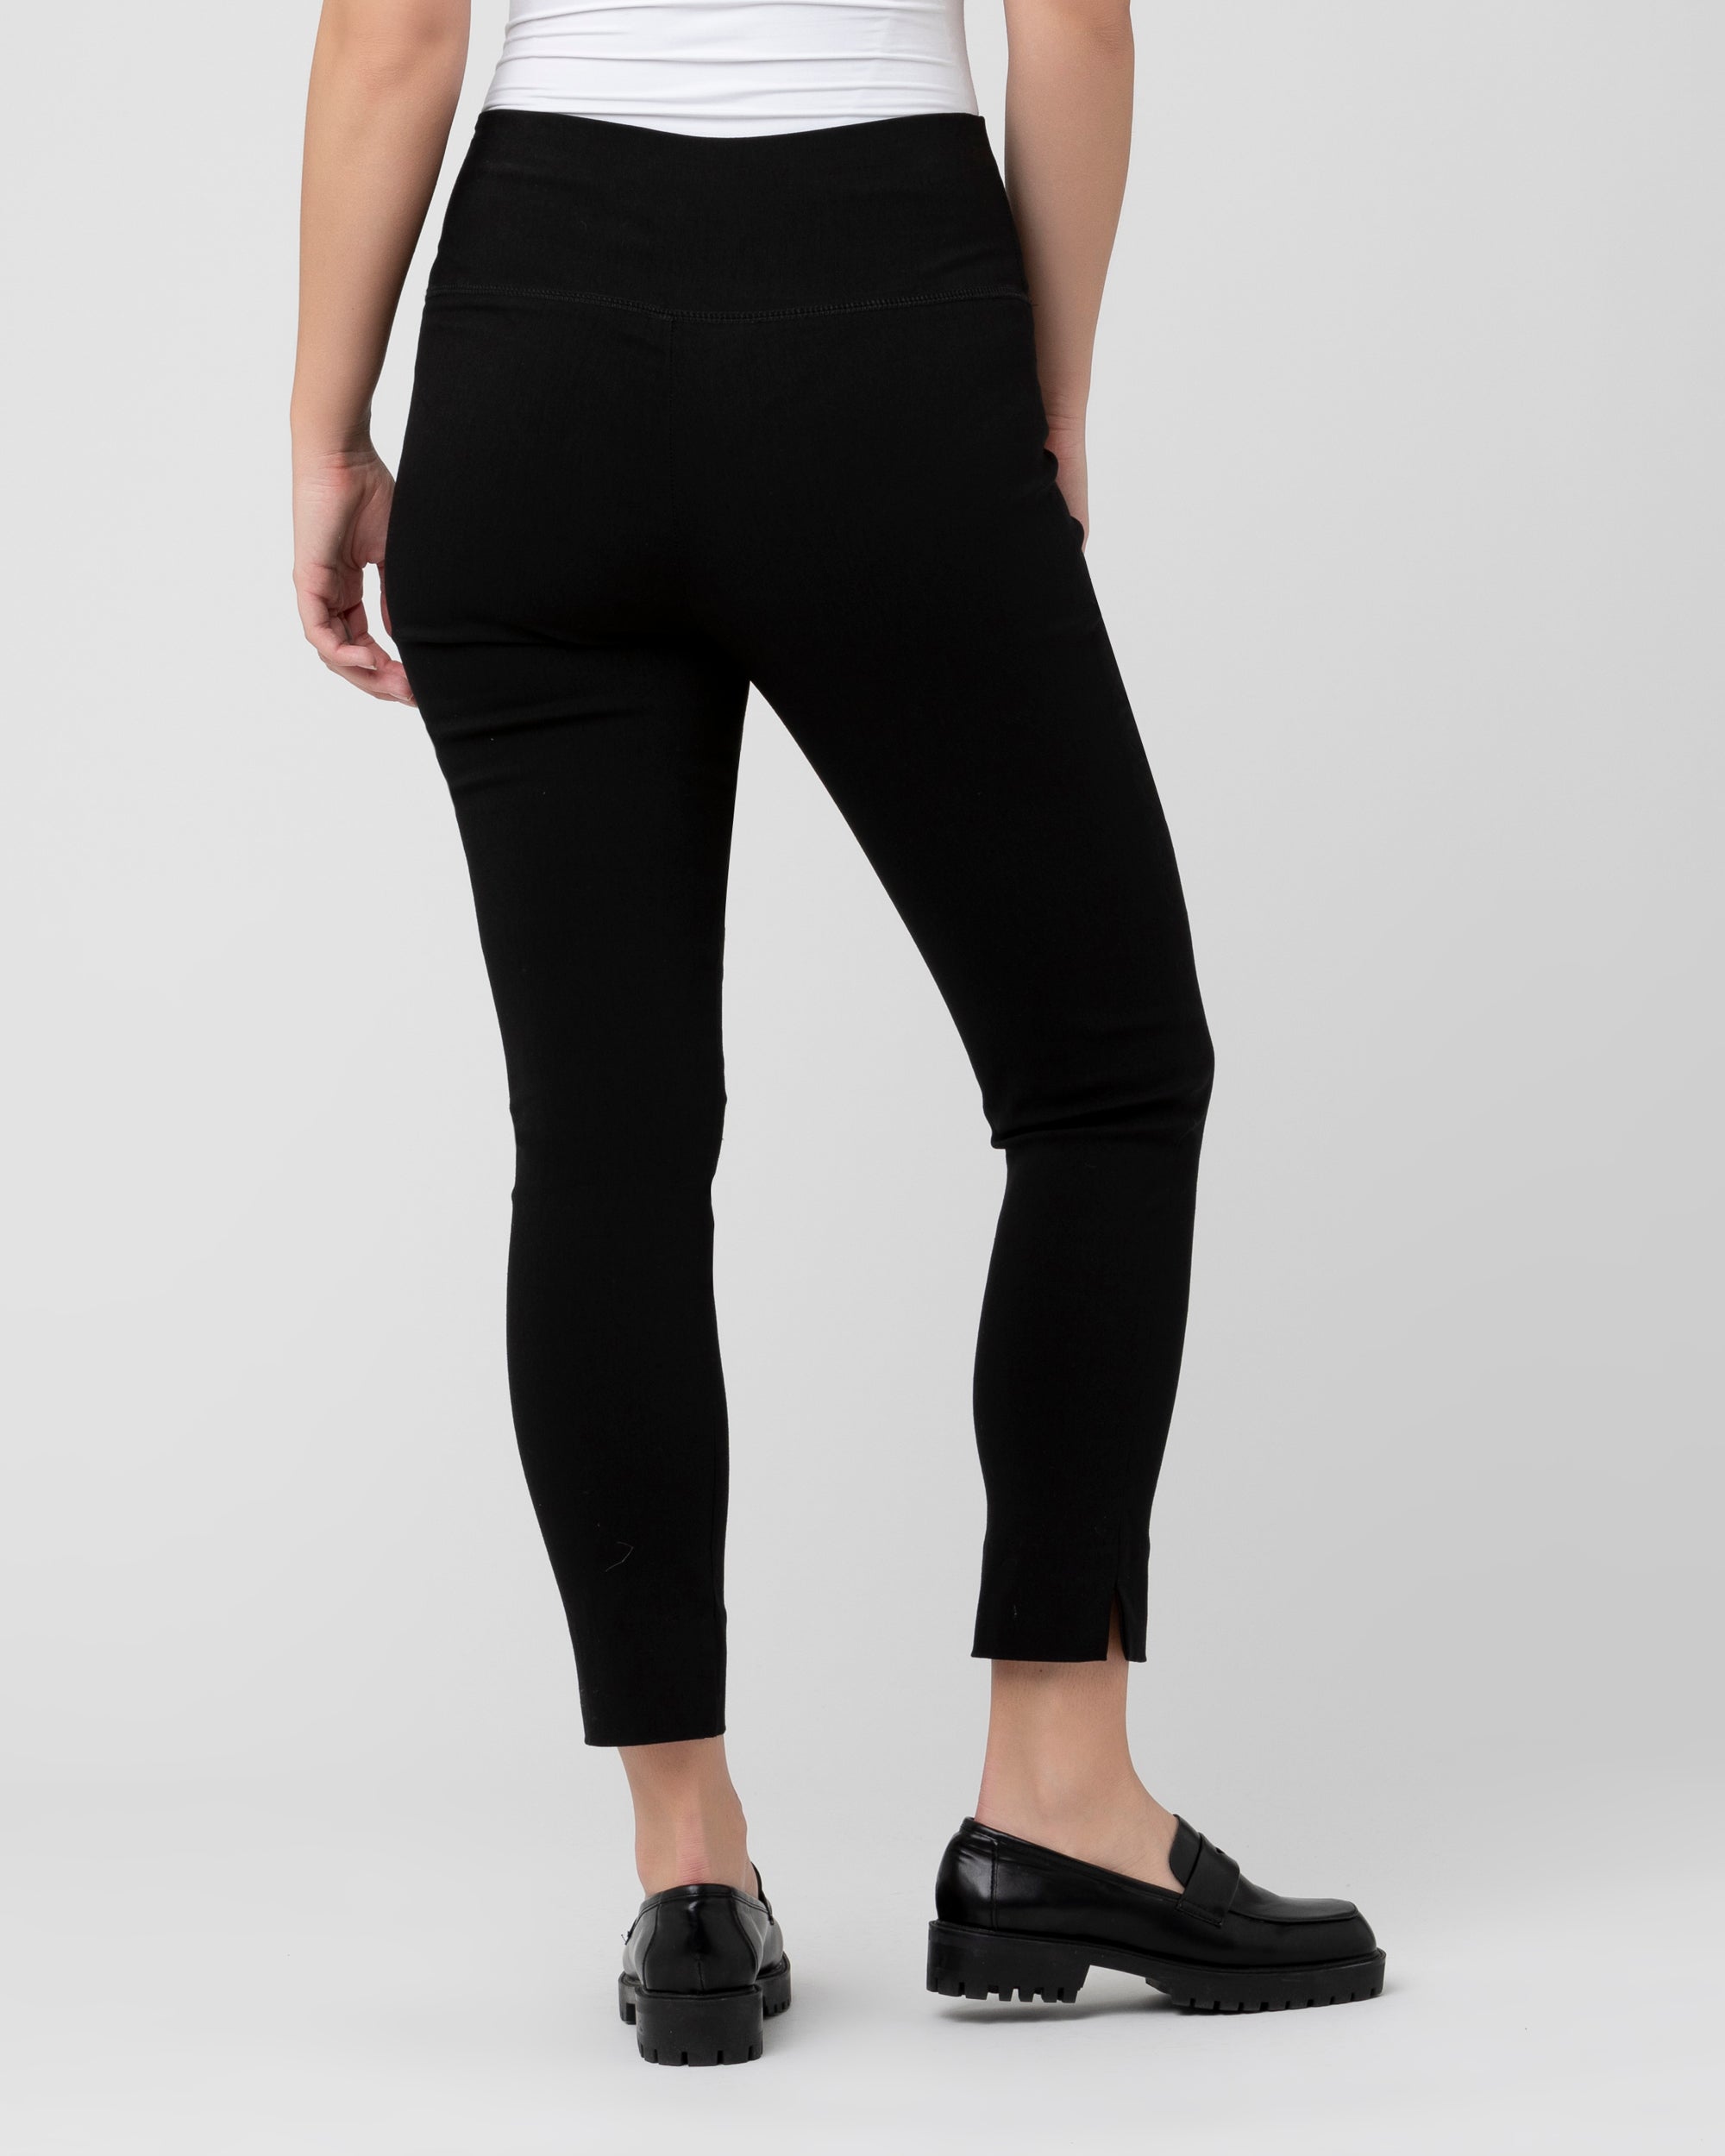 Women's Peak Performance Sports capri pants, size 34 (Black)